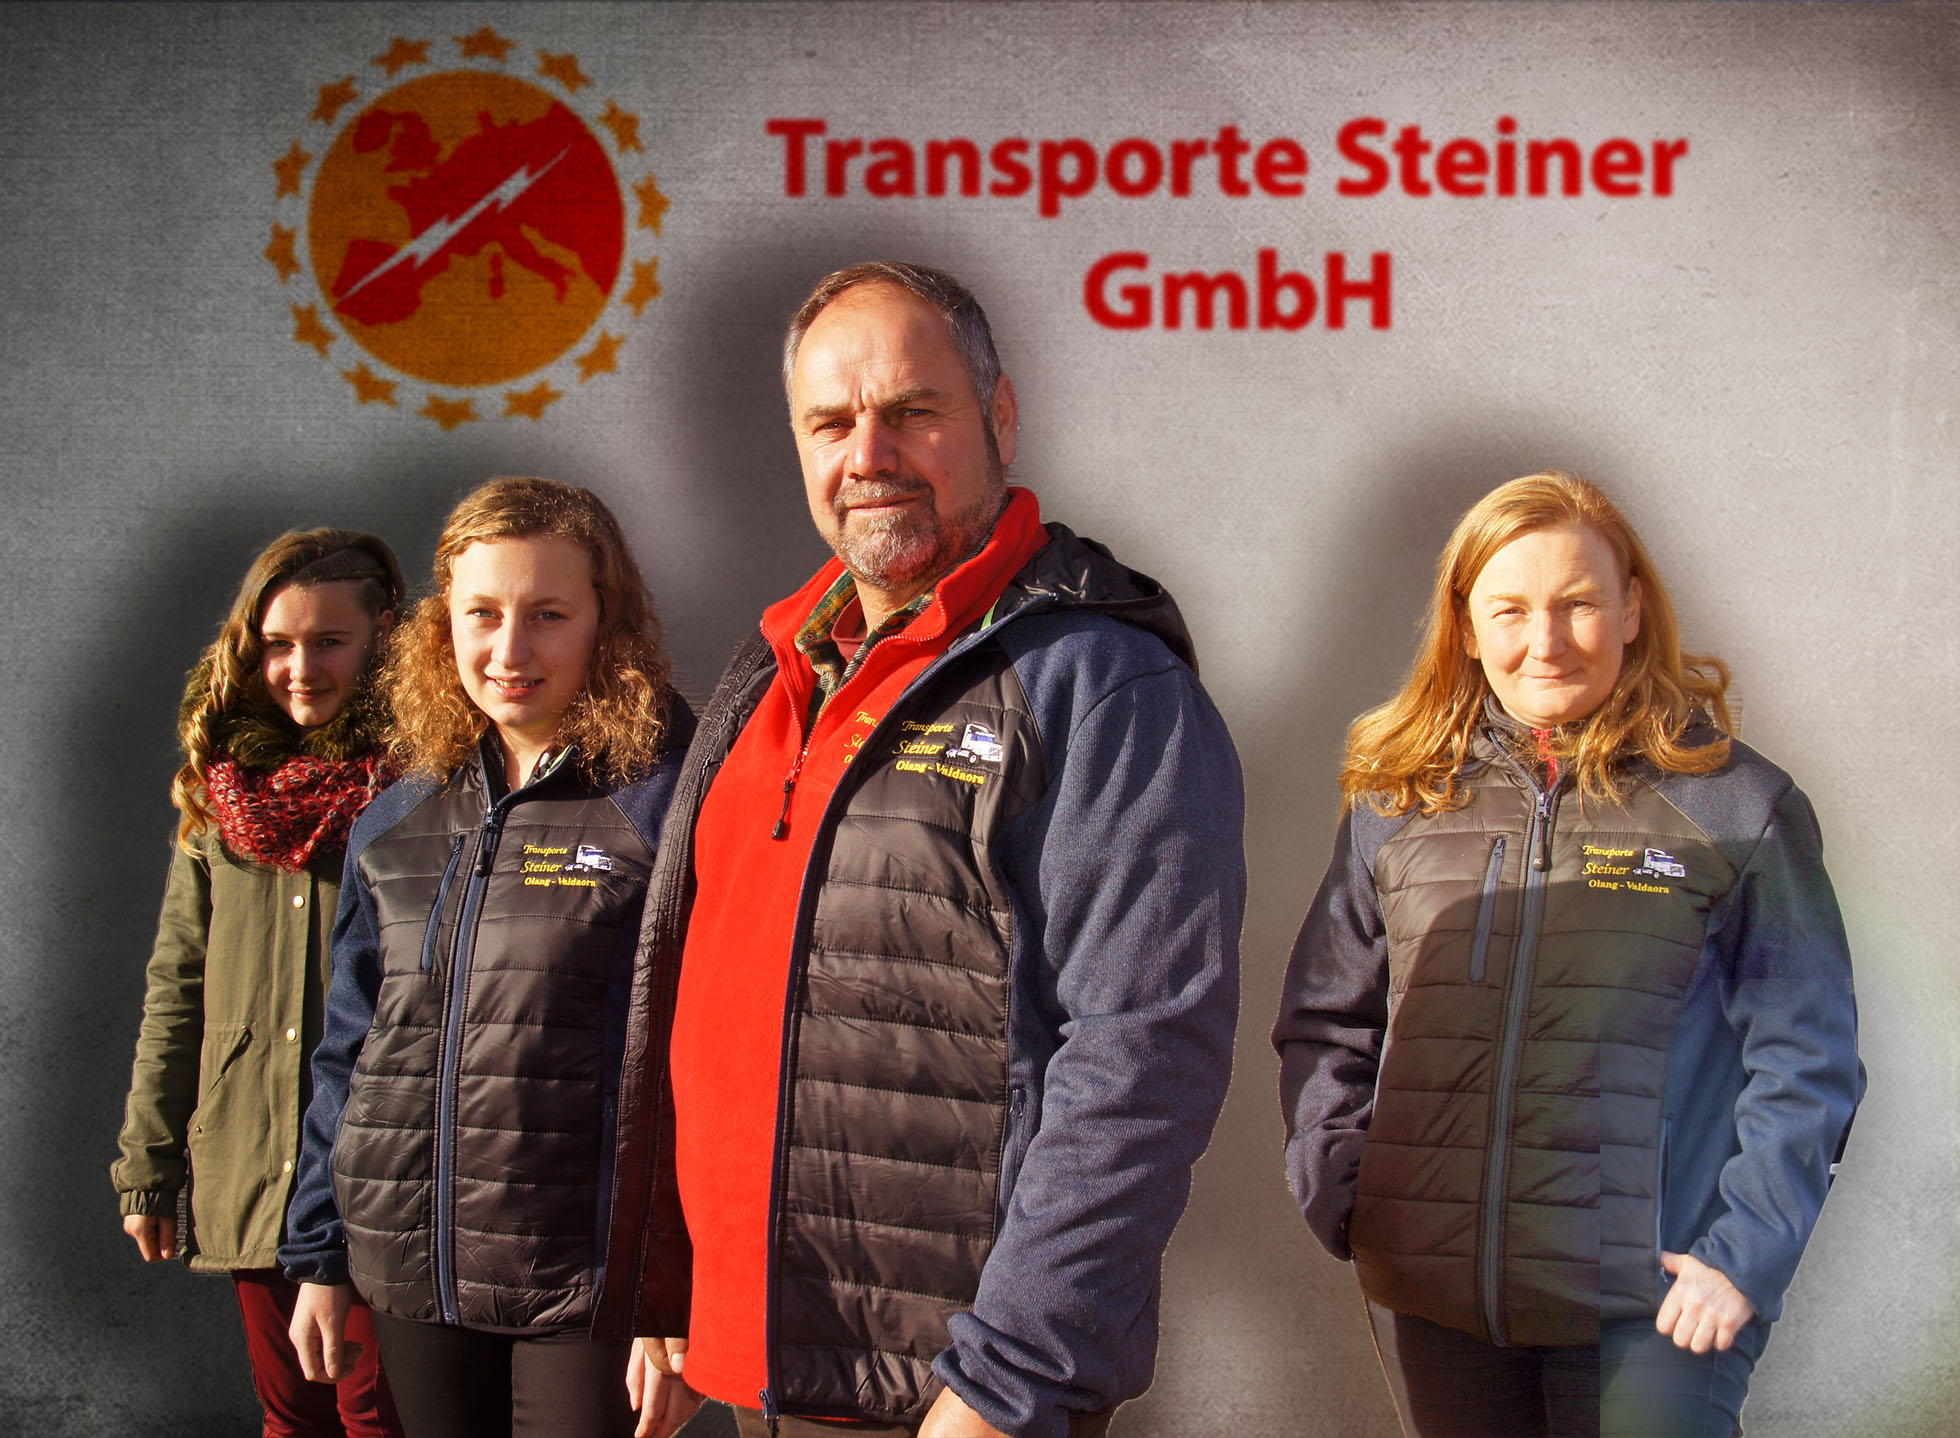 Team Transporte Steiner